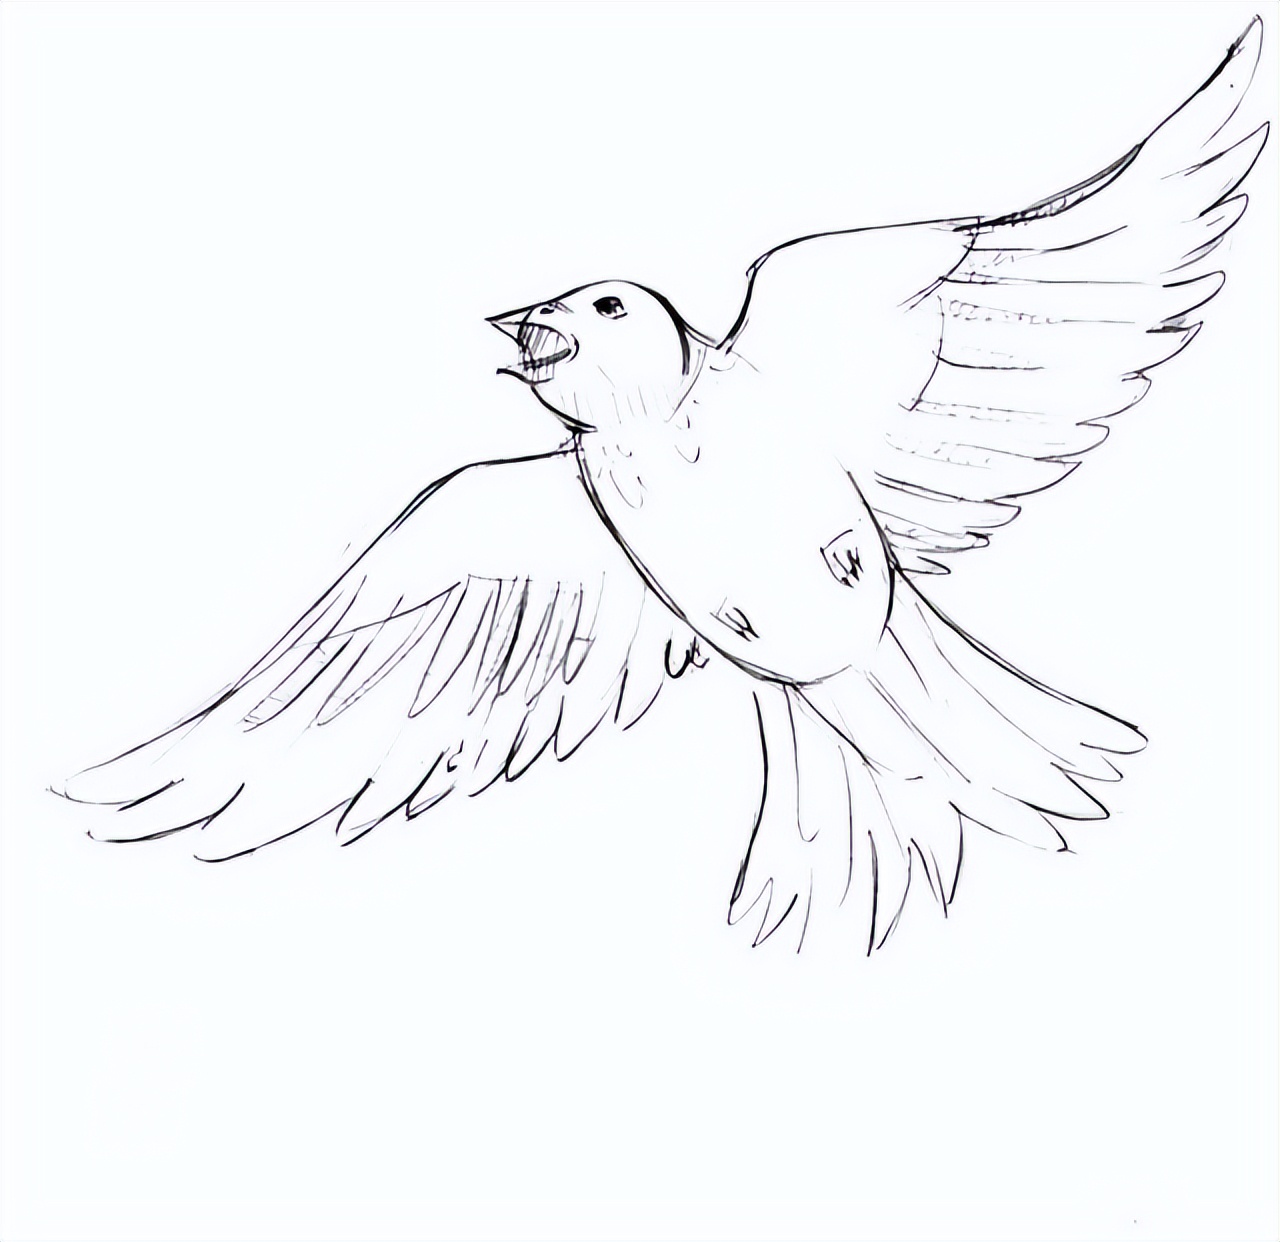 用铅笔素描的鸟类图片(34张)